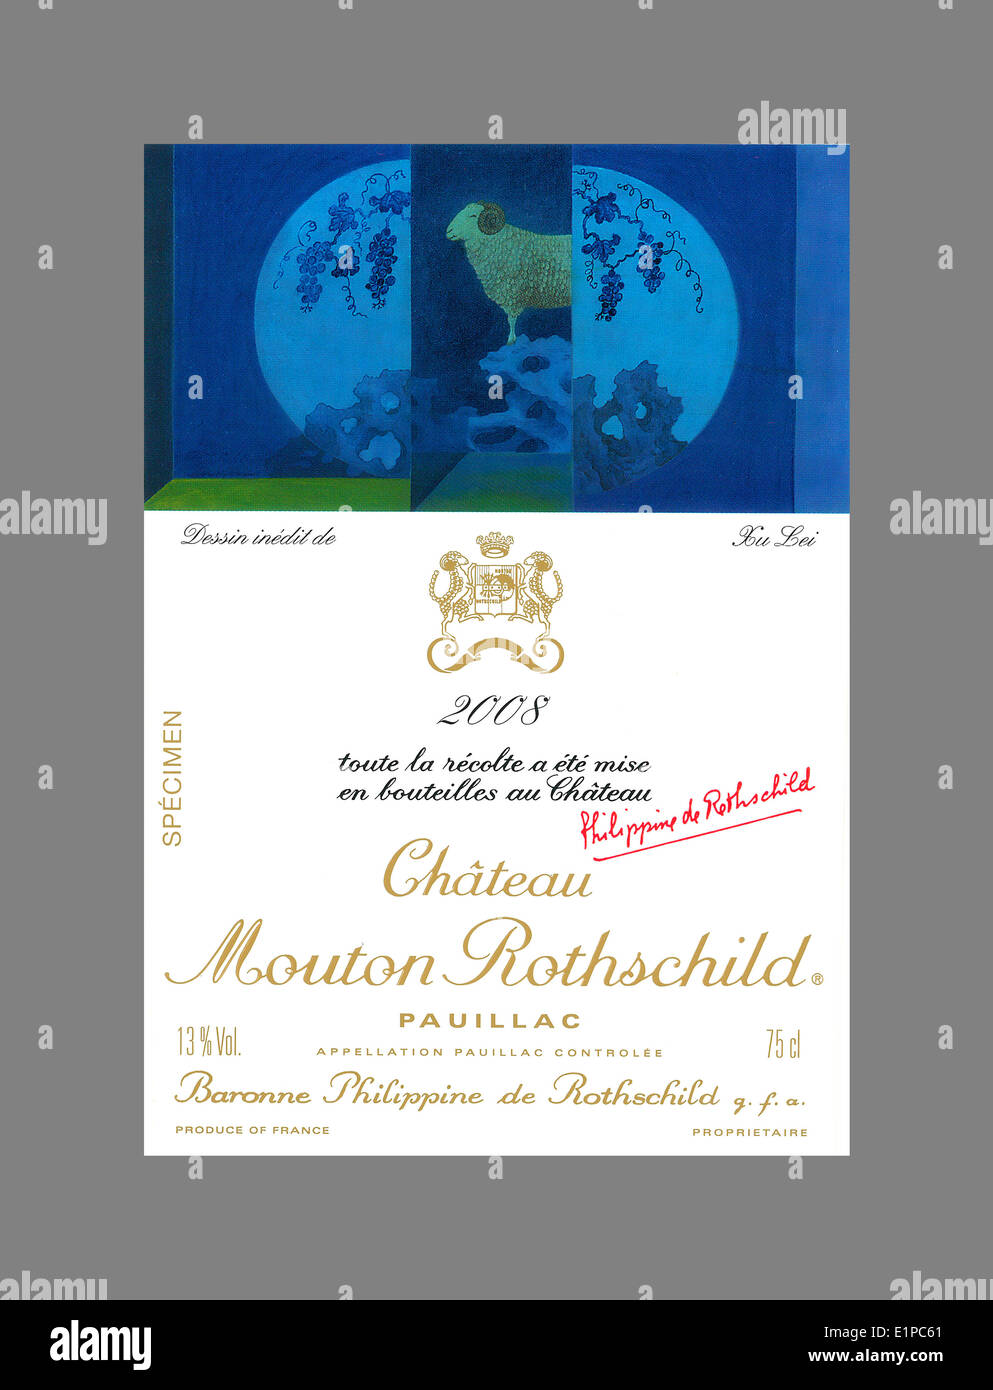 Bottiglia di vino etichetta per uno dei più grandi vini di Bordeaux Château Mouton Rothschild 2008 Pauillac rosso vino di Bordeaux Foto Stock